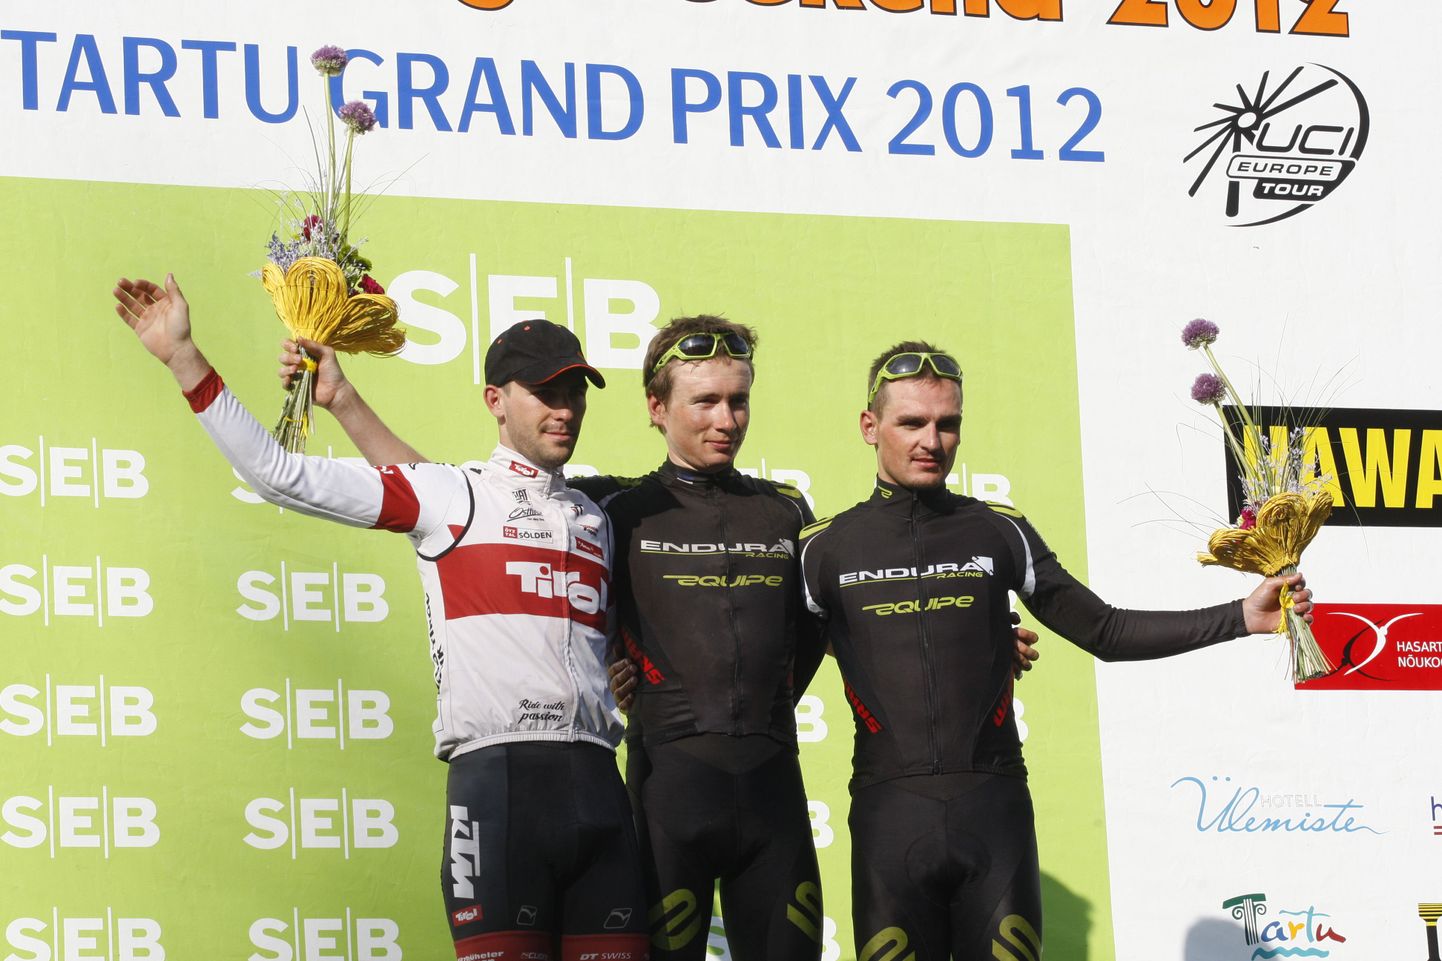 Tartu Grand Prix 2012 esikolmik - võitja Rene Mandri, temast vasakul teise koha saanud Blaz Furdi ja paremal kolmas mees Paul Voss.